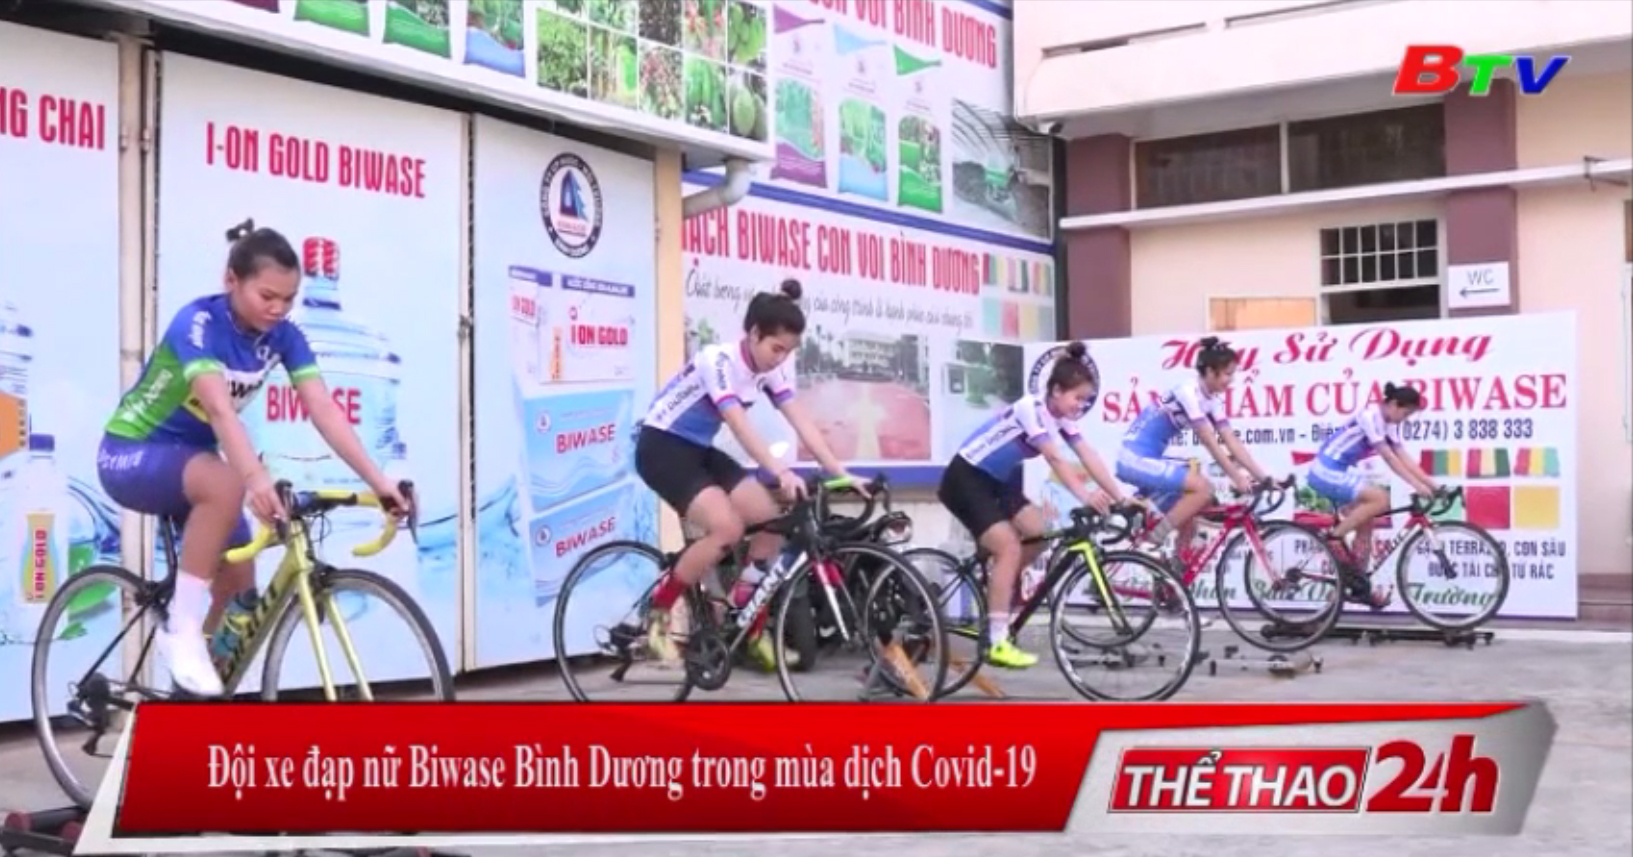 Đội xe đạp nữ Biwase Bình Dương trong mùa dịch Covid-19